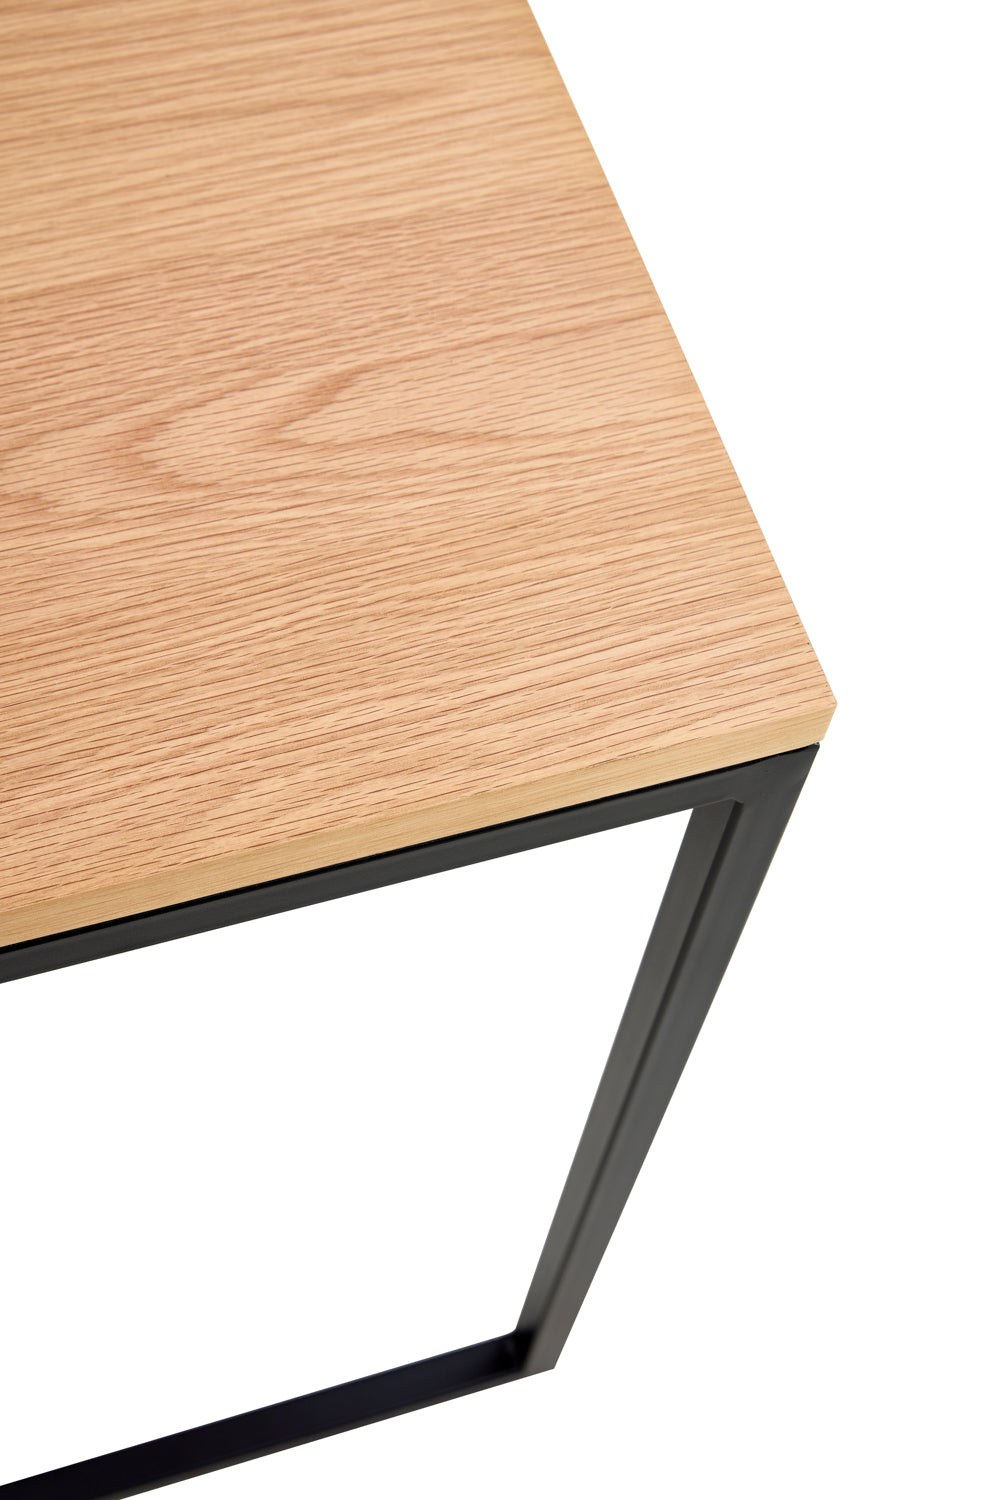 Sole c-side Table in Oak & Metal